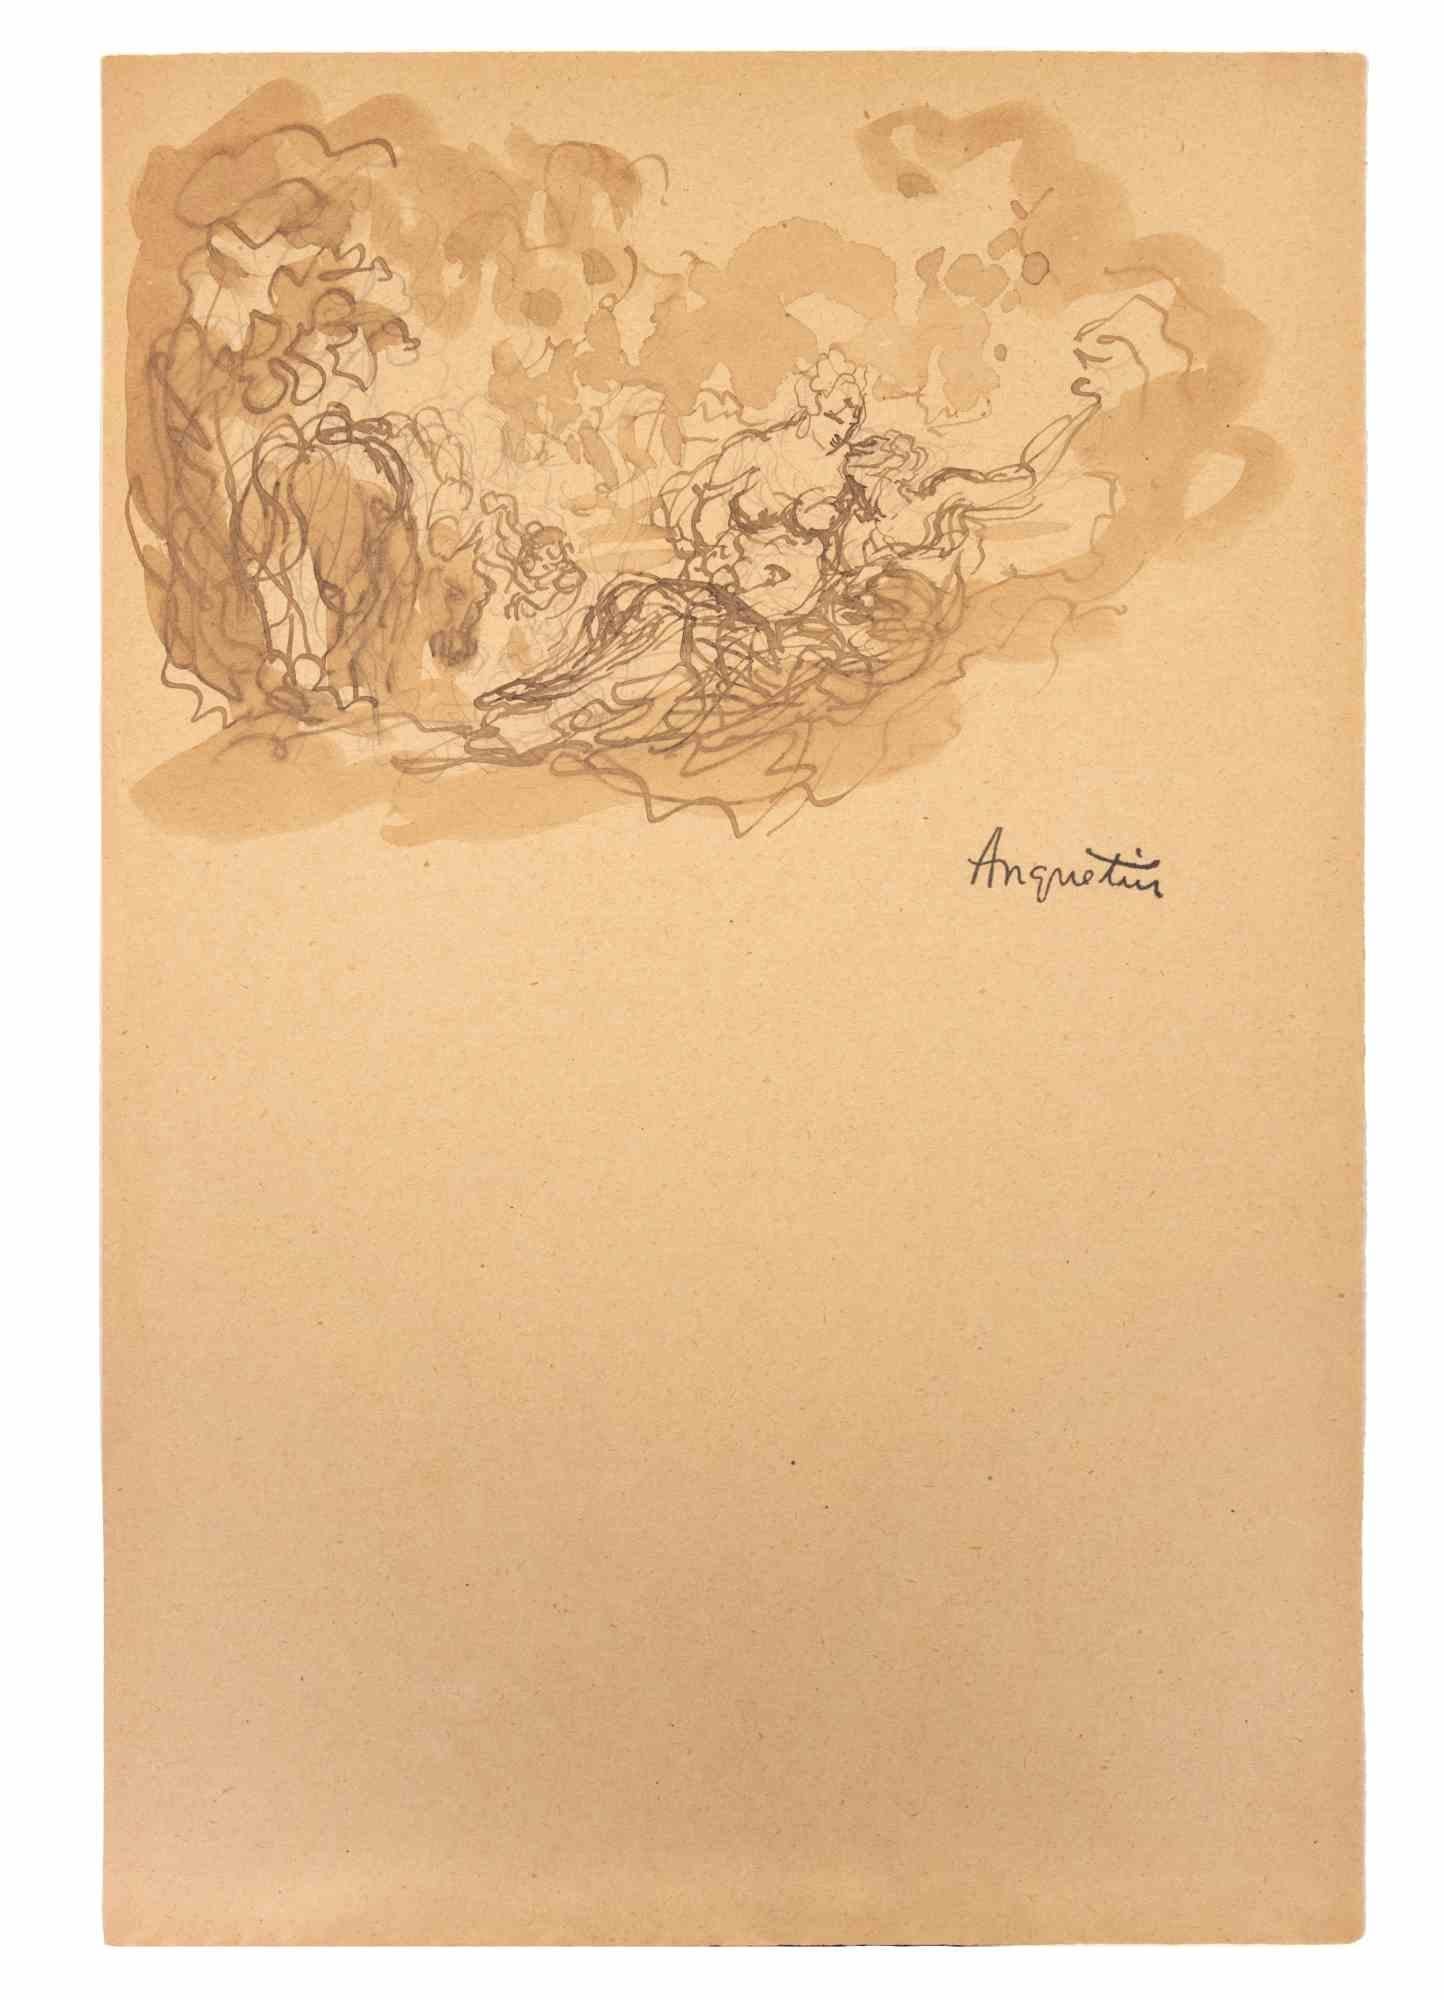 Das Liebespaar ist eine Tusche- und Bleistiftzeichnung auf Papier, die Anfang des 20. Jahrhunderts von Louis Anquetin (1861-1932) angefertigt wurde.

Handsigniert auf der Unterseite.

Guter Zustand.

Louis Émile Anquetin (26. Januar 1861 - 19.